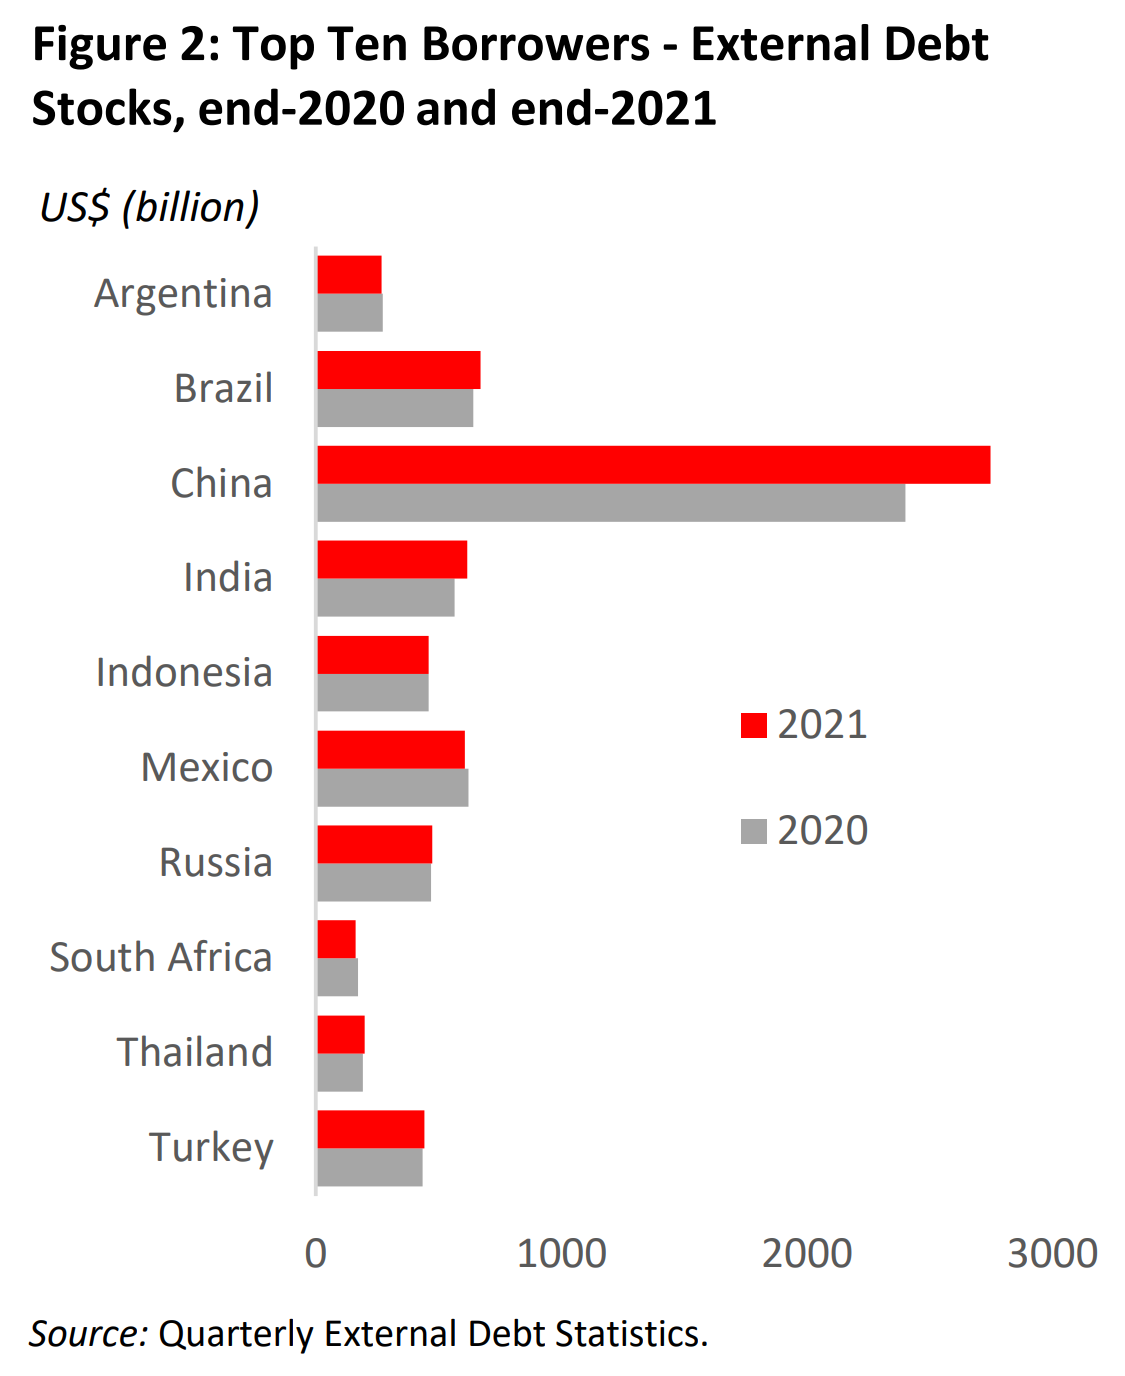 Top Ten borrower countries, external debt stocks, end-2020 and end-2021. Data: World Bank Quarterly External Debt Statistics. Graphic: World Bank